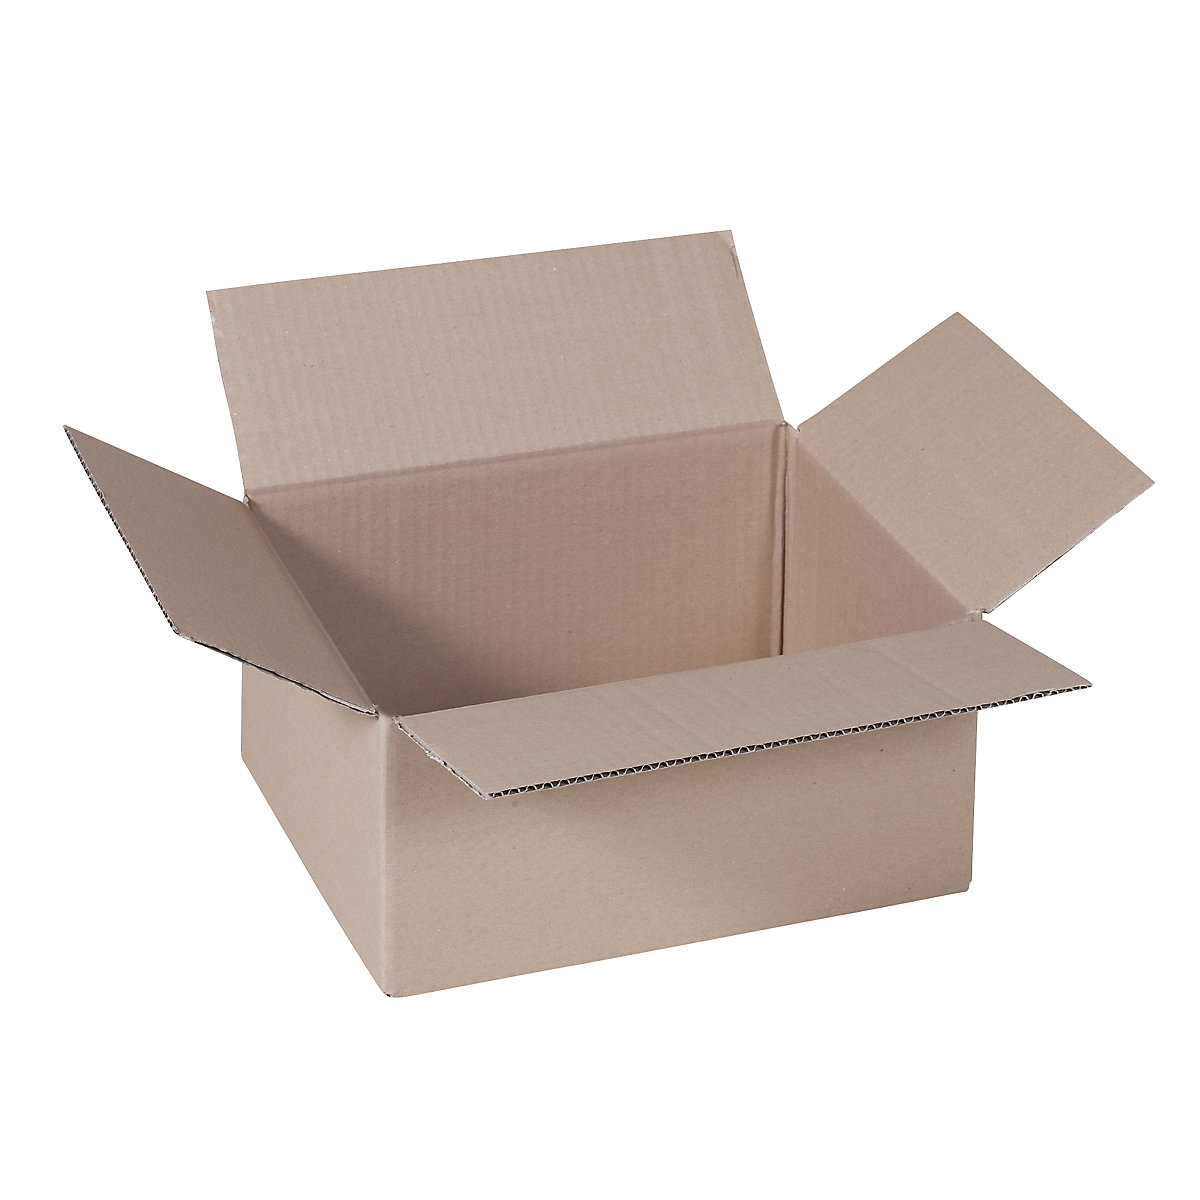 Sklopiva kartonska kutija, FEFCO 0201, od 1-valnog kartona, unutarnje dimenzije 400 x 300 x 250 mm, pak. 100 kom.-39